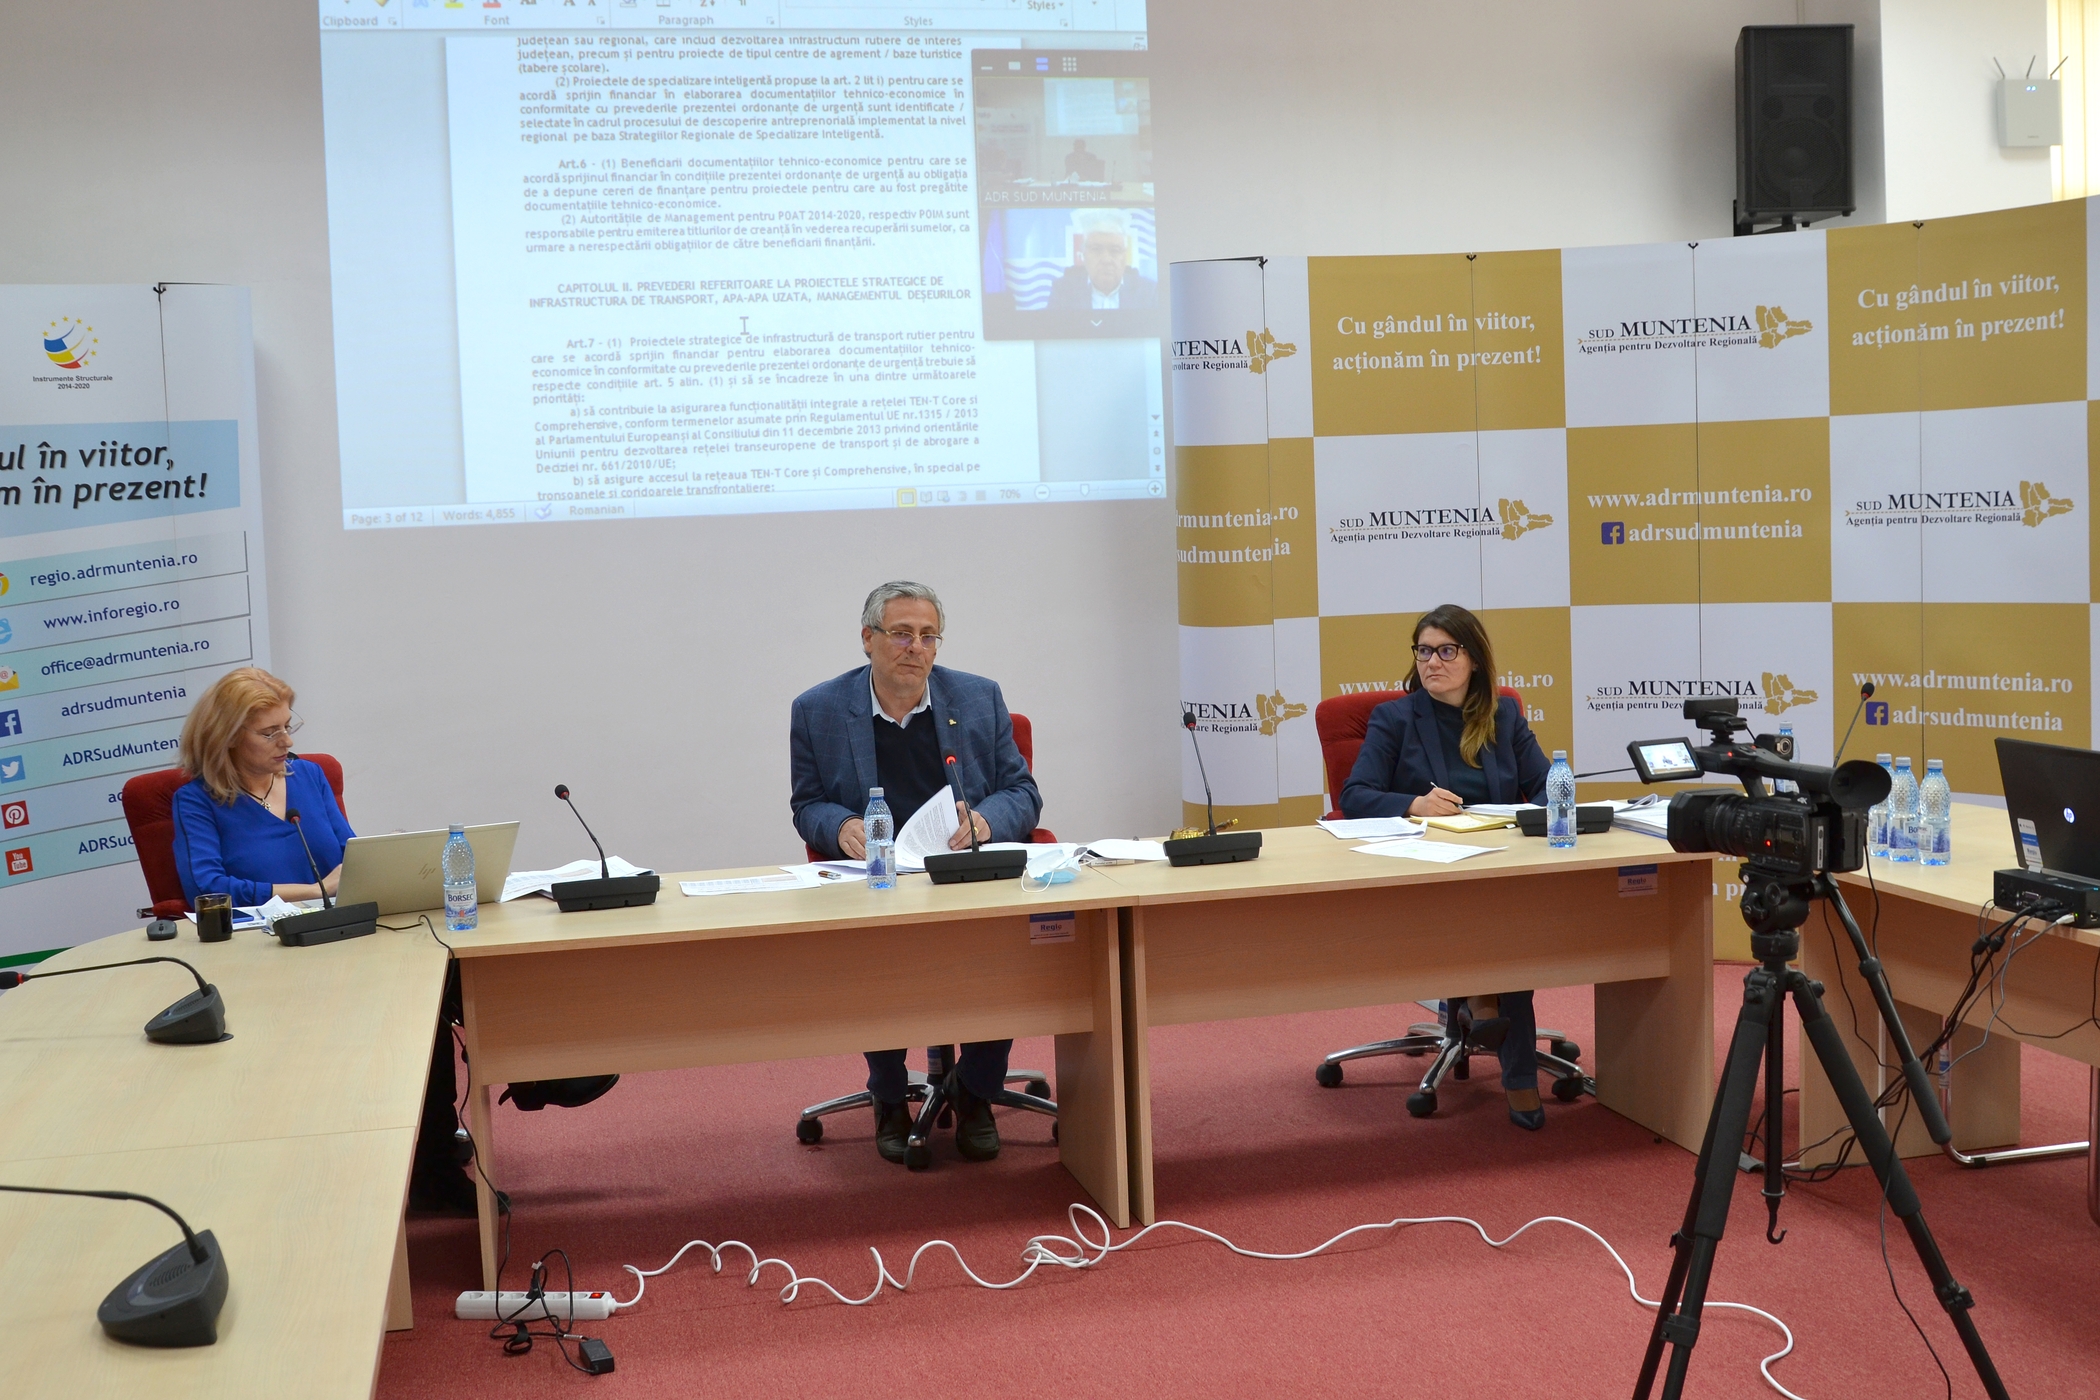 ADR Sud Muntenia online, alături de reprezentanții municipiilor reședință de județ din Sud Muntenia